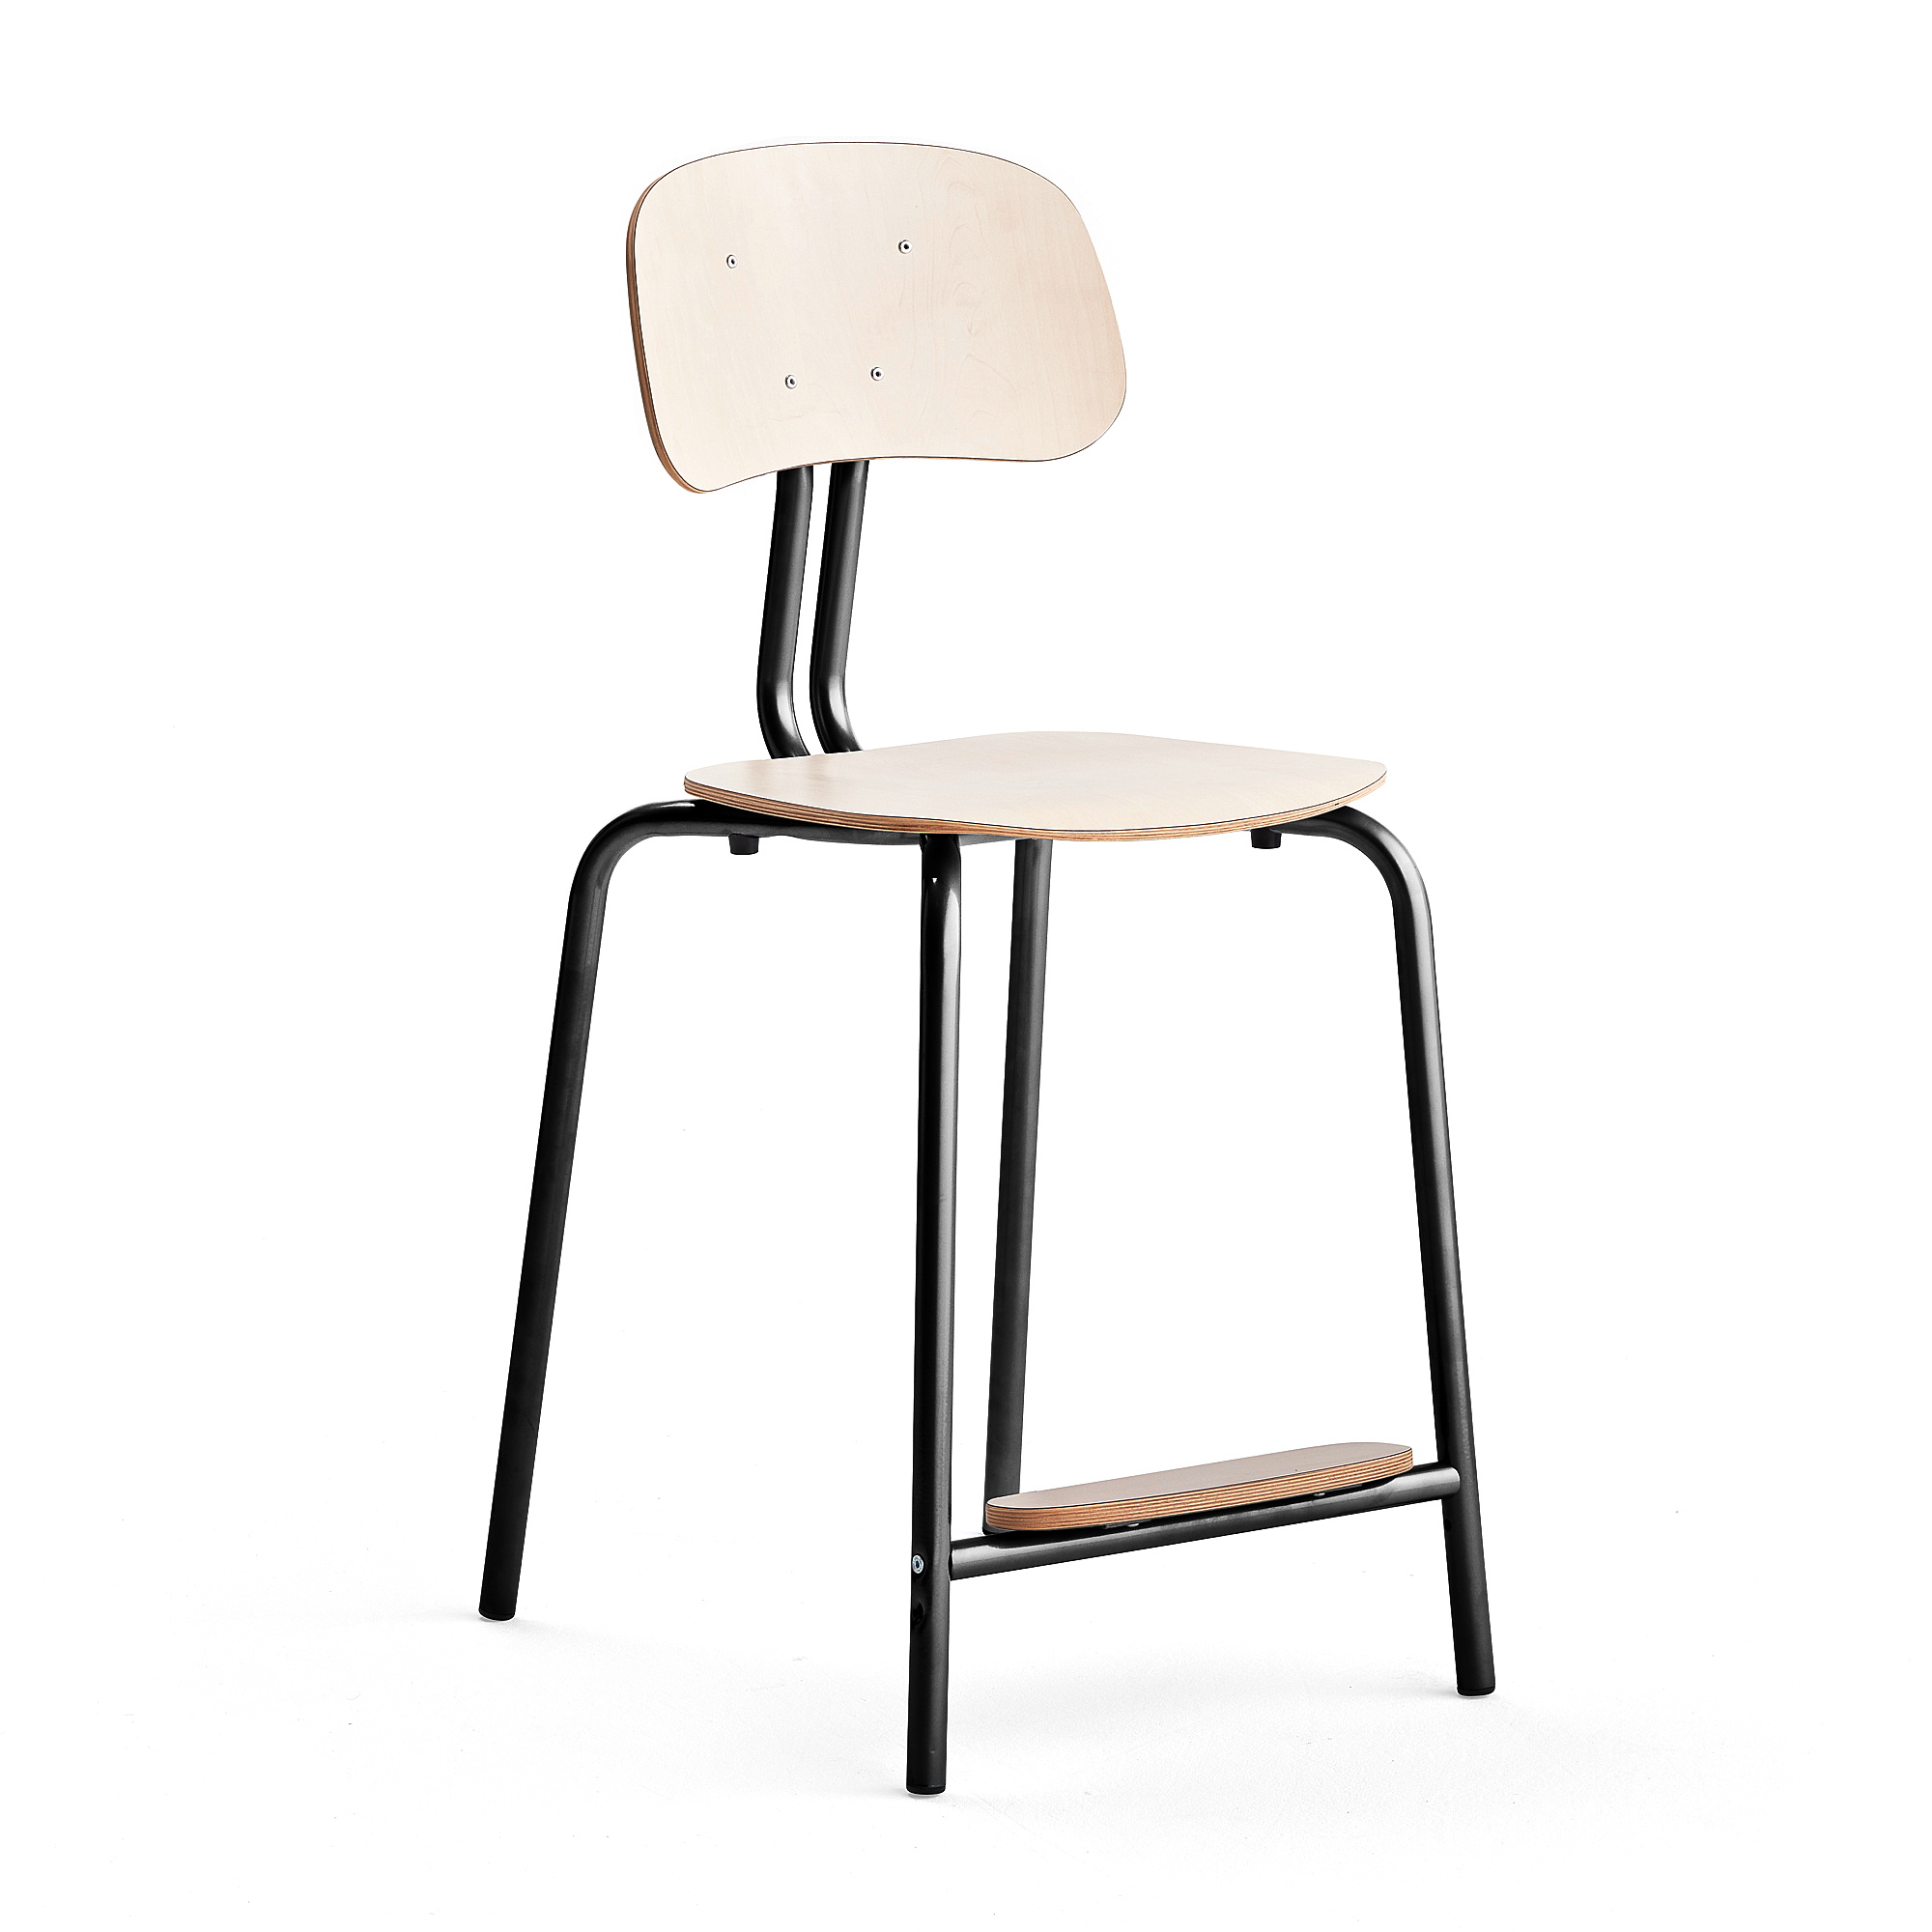 Školní židle YNGVE, 4 nohy, výška 610 mm, antracitově šedá/bříza